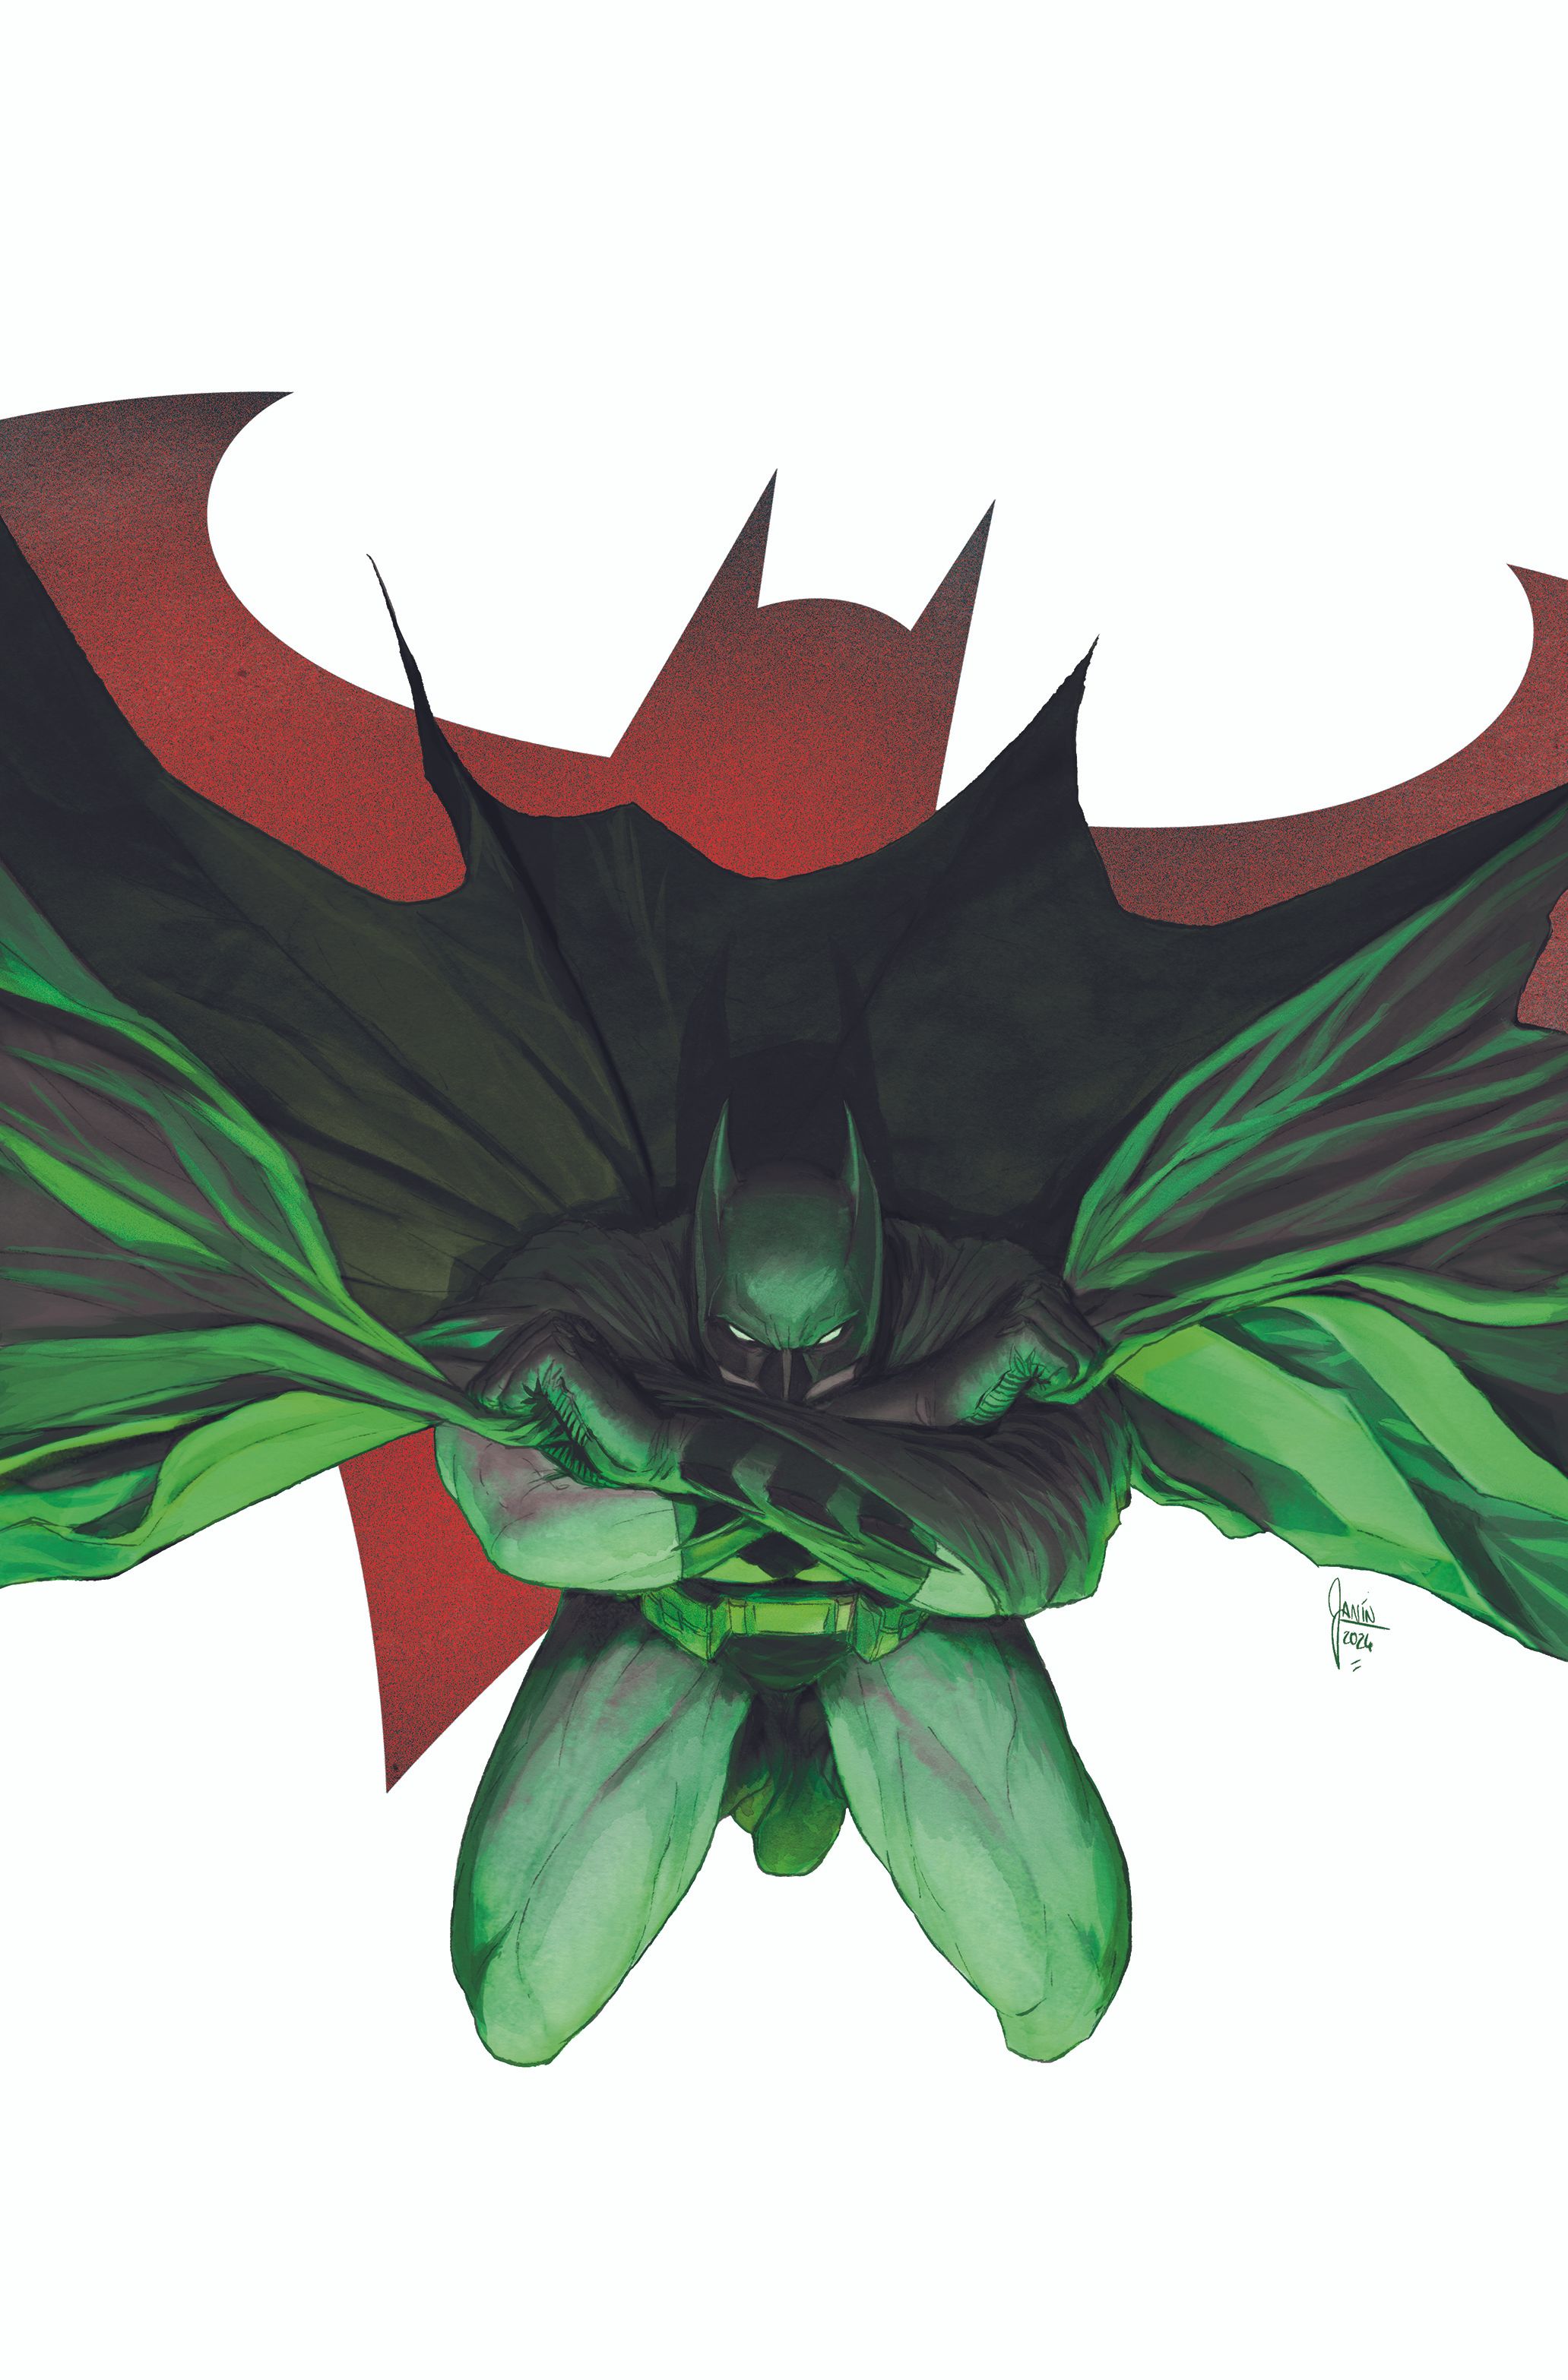 Capa principal da revista Detective Comics 1090: Batman salta para frente, puxando sua capa com os braços cruzados.